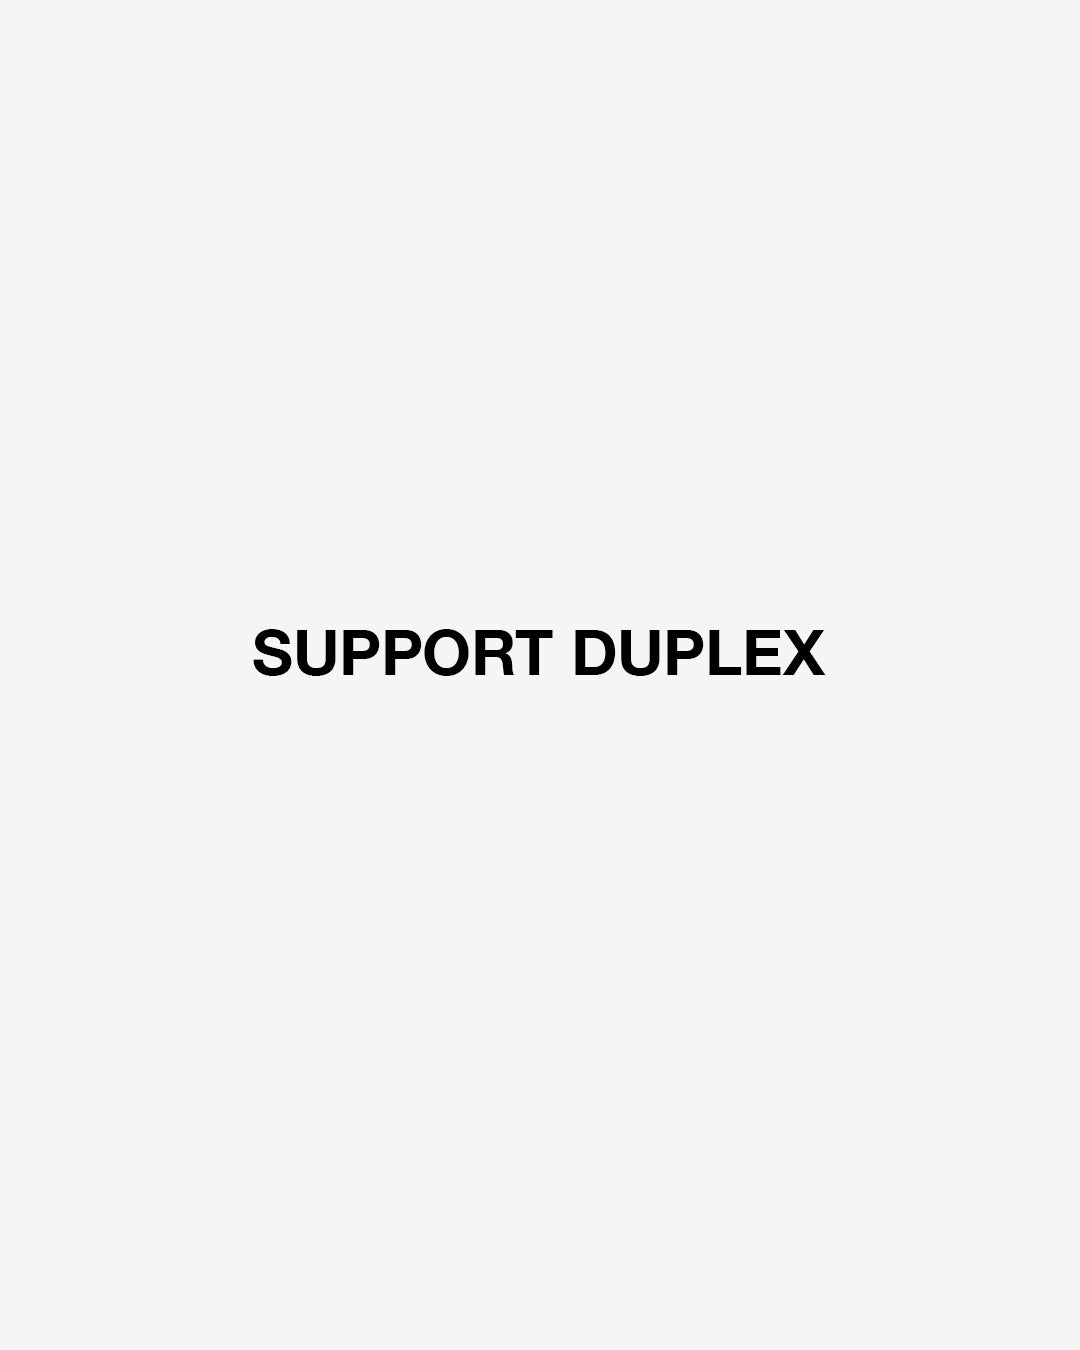 SUPPORT DUPLEX